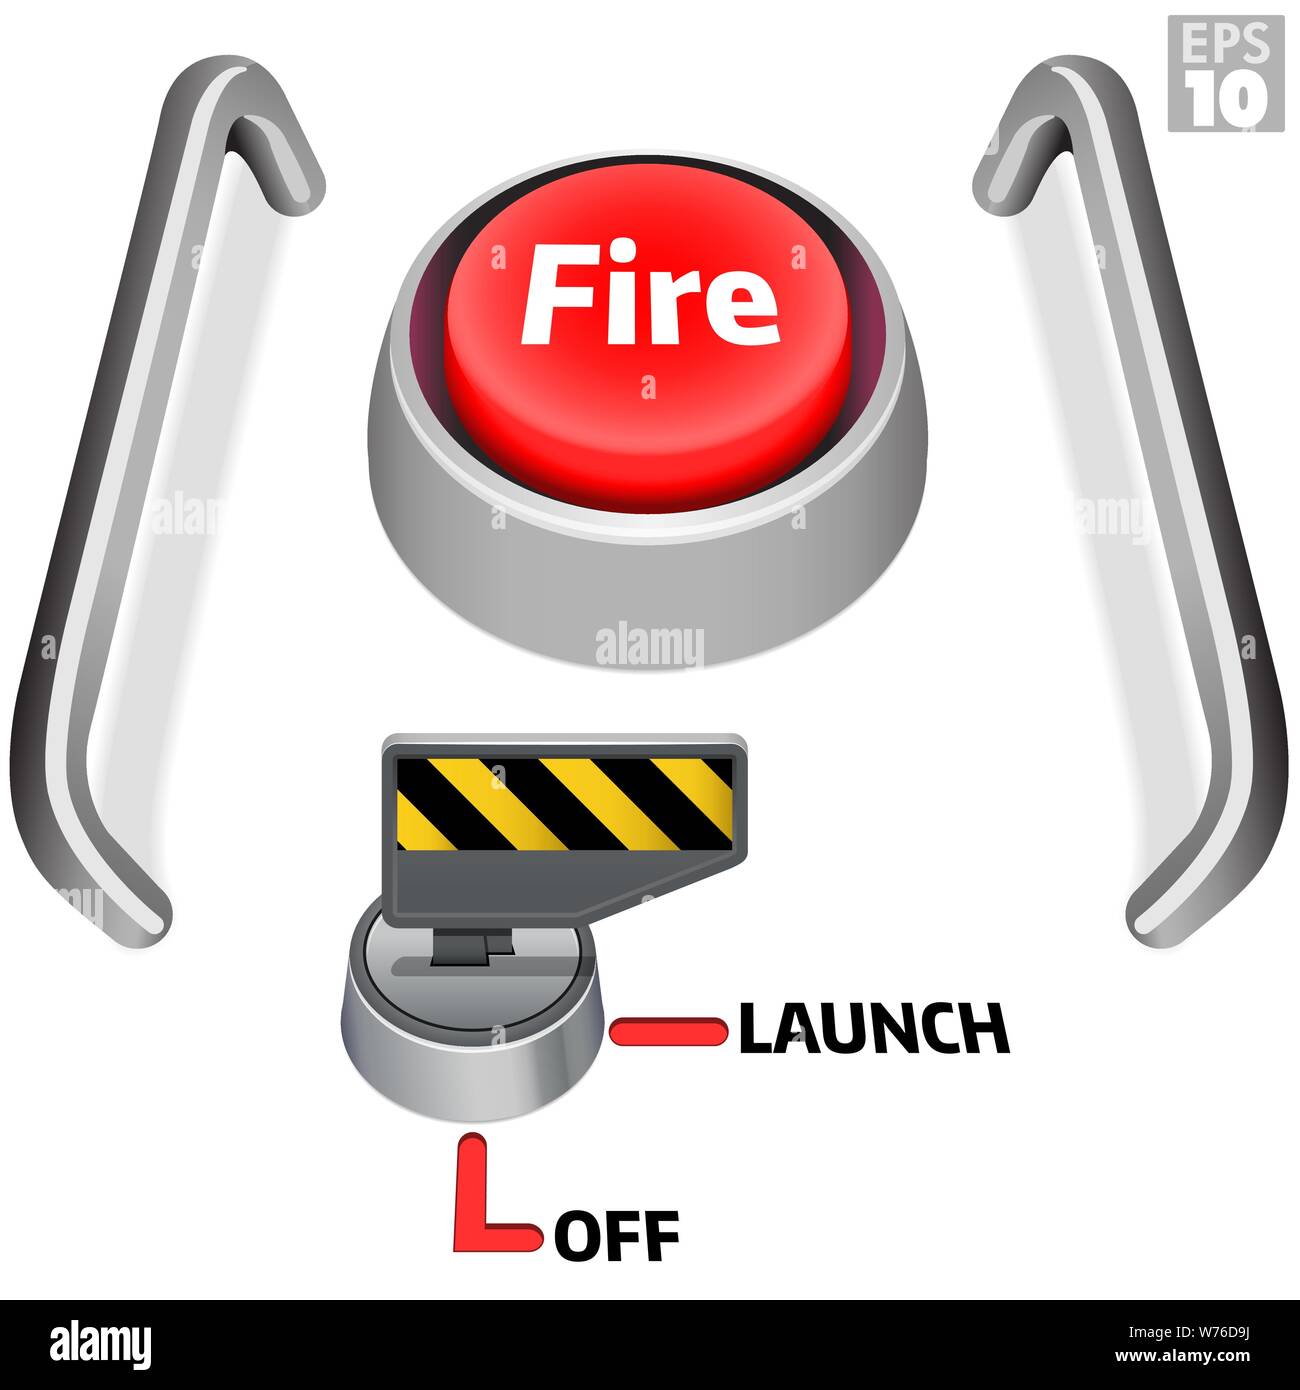 Die Launch Control Center mit großen roten Druckknopf, Sicherheit Start Taste eingeschaltet und um Schutz für die Feuer-Schalter drücken. Stock Vektor